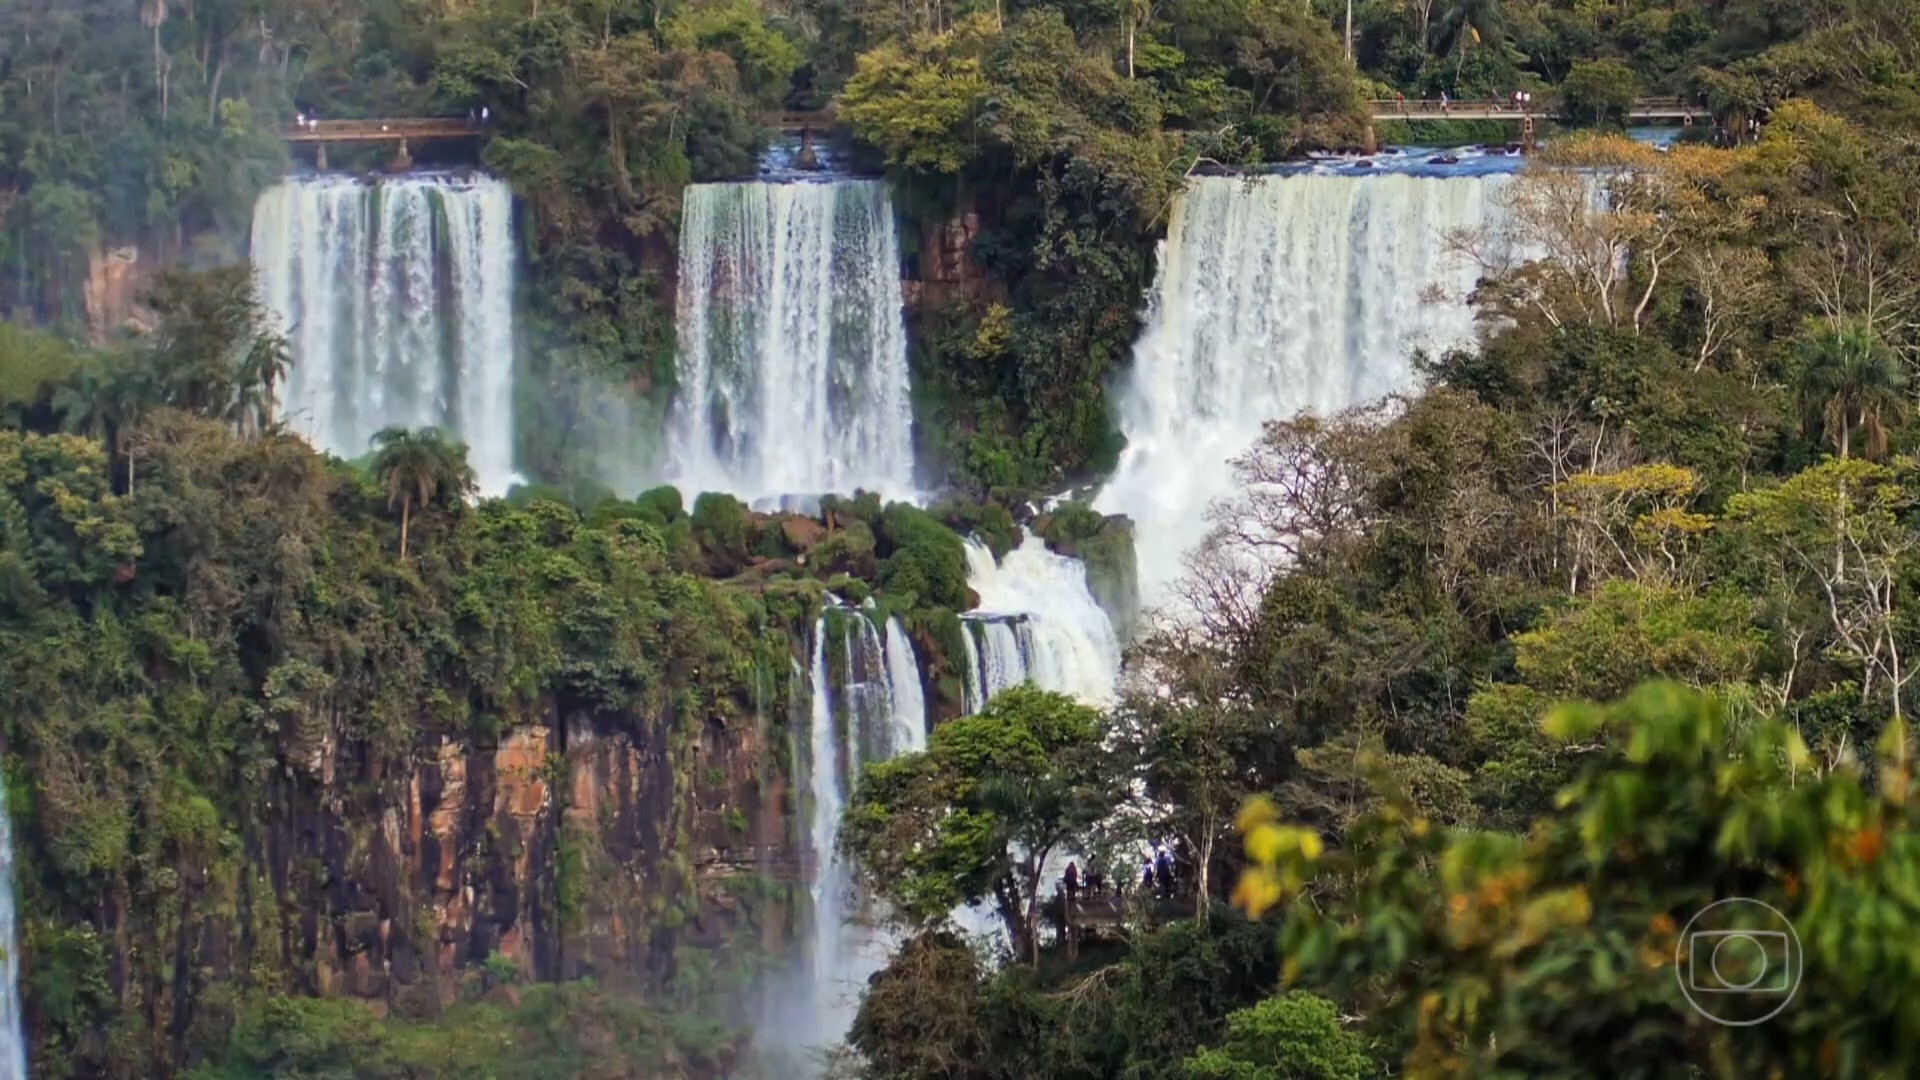 Poluição, limpeza natural e geração de energia: descubra curiosidades sobre o rio que forma as Cataratas do Iguaçu 